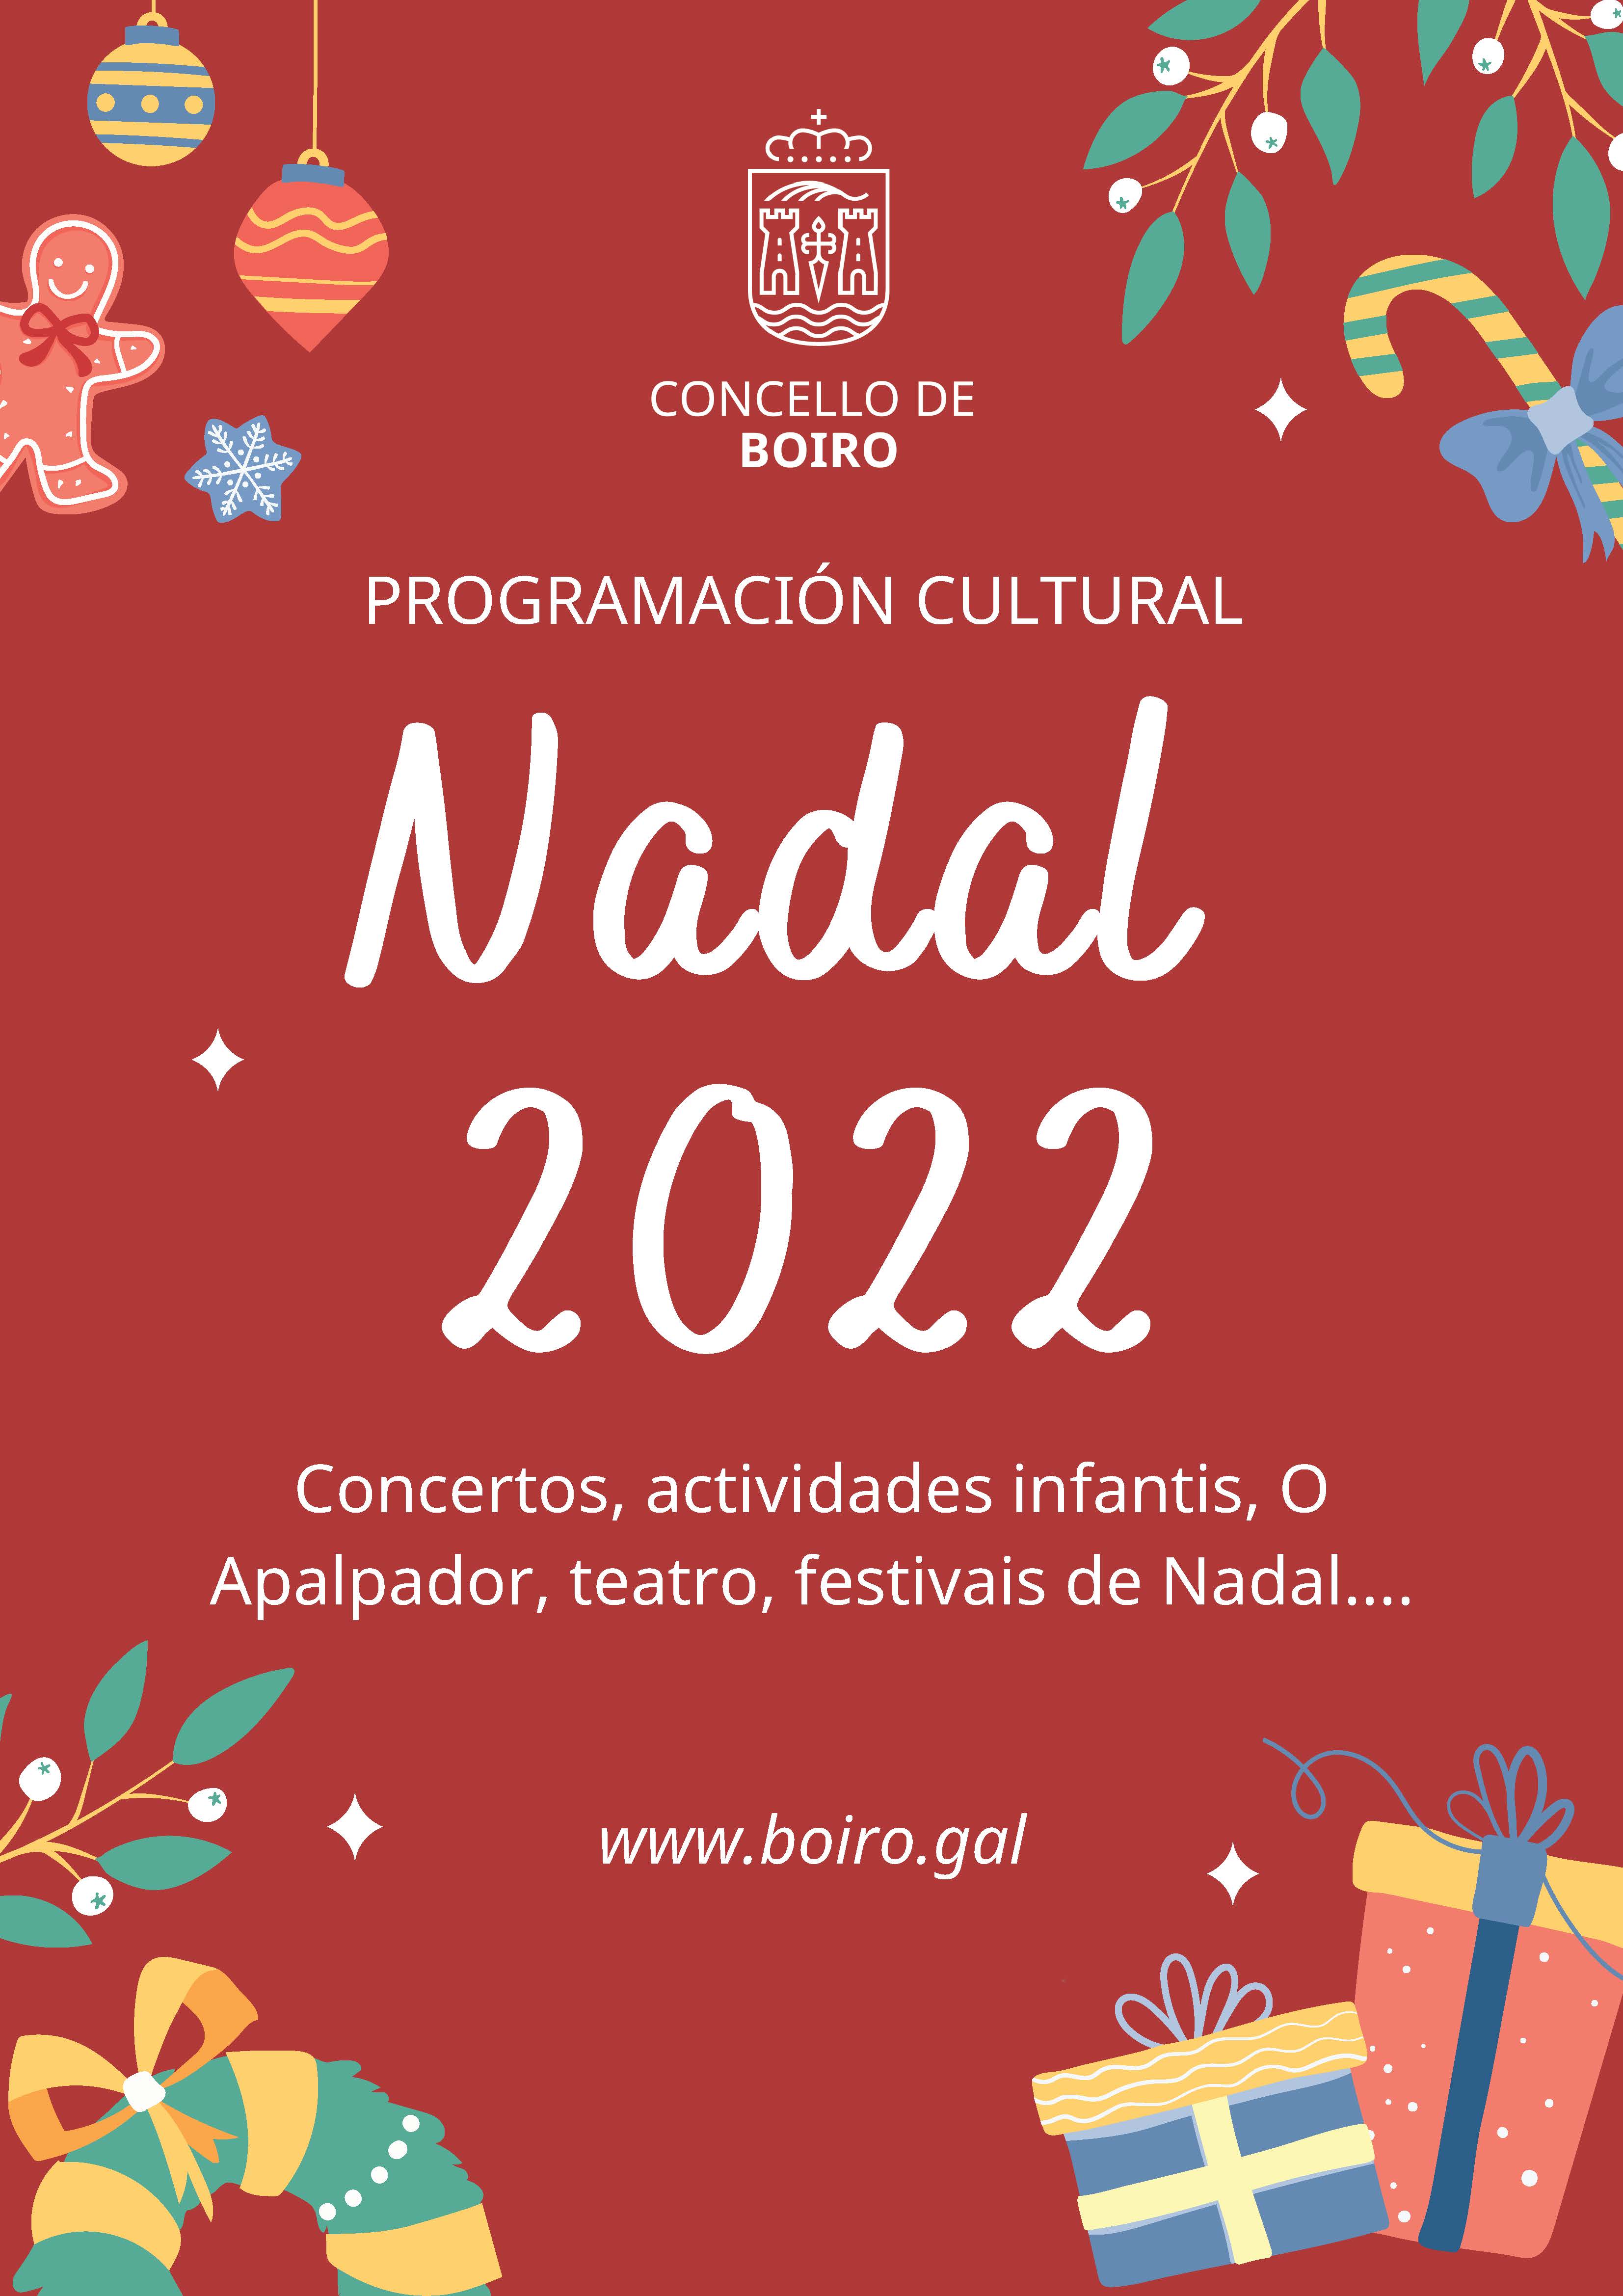 Programación cultural Nadal 2022 | Concello de Boiro 